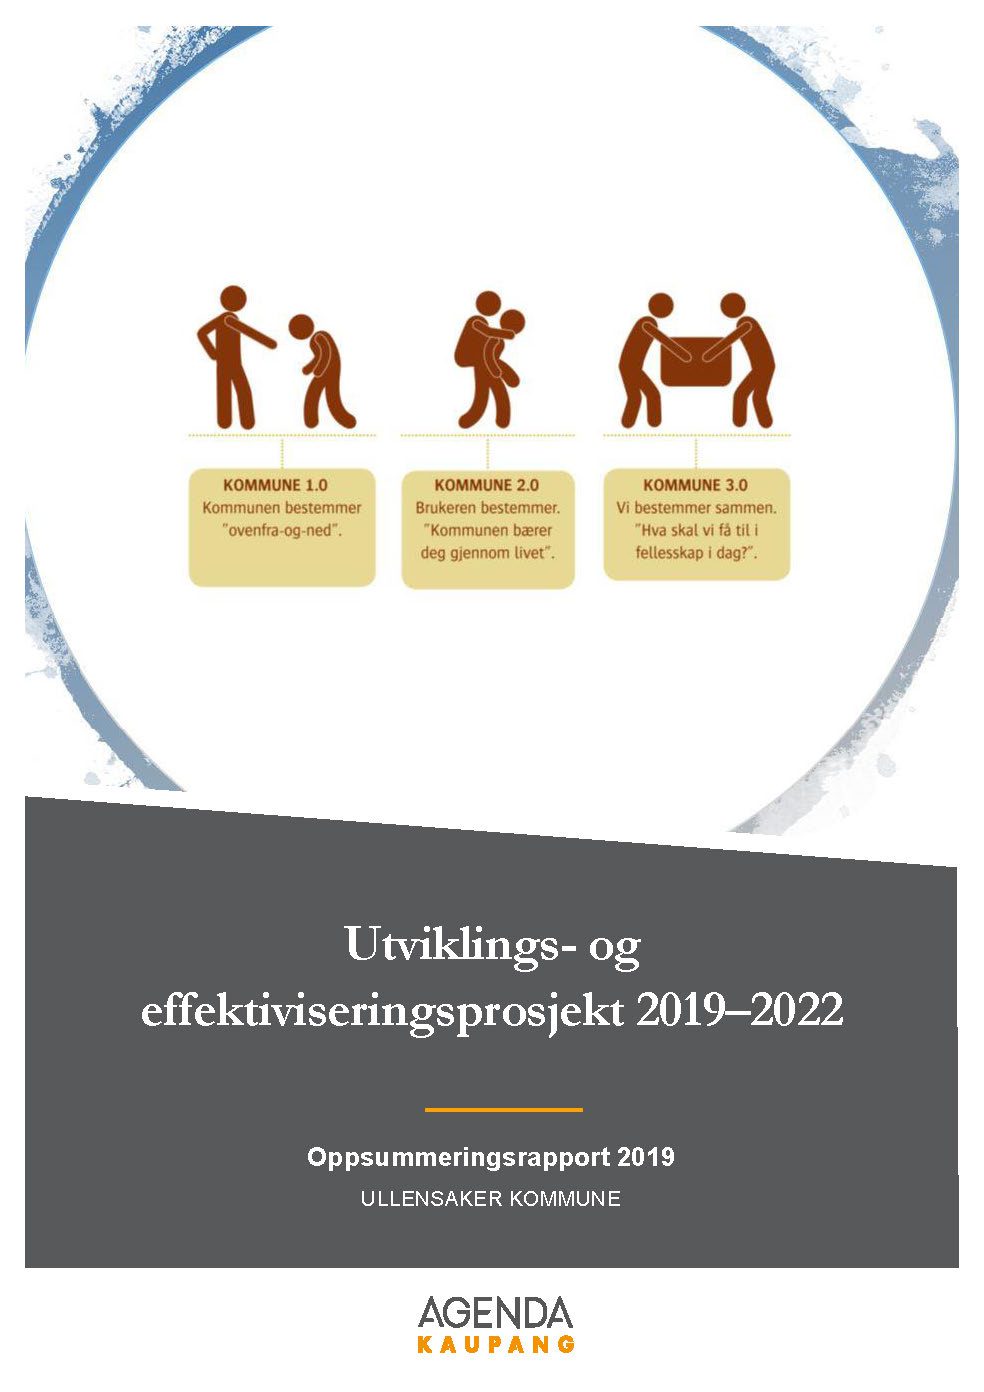 Utviklings- og effektiviseringsprosjekt 2019-2022 – oppsummeringsrapport